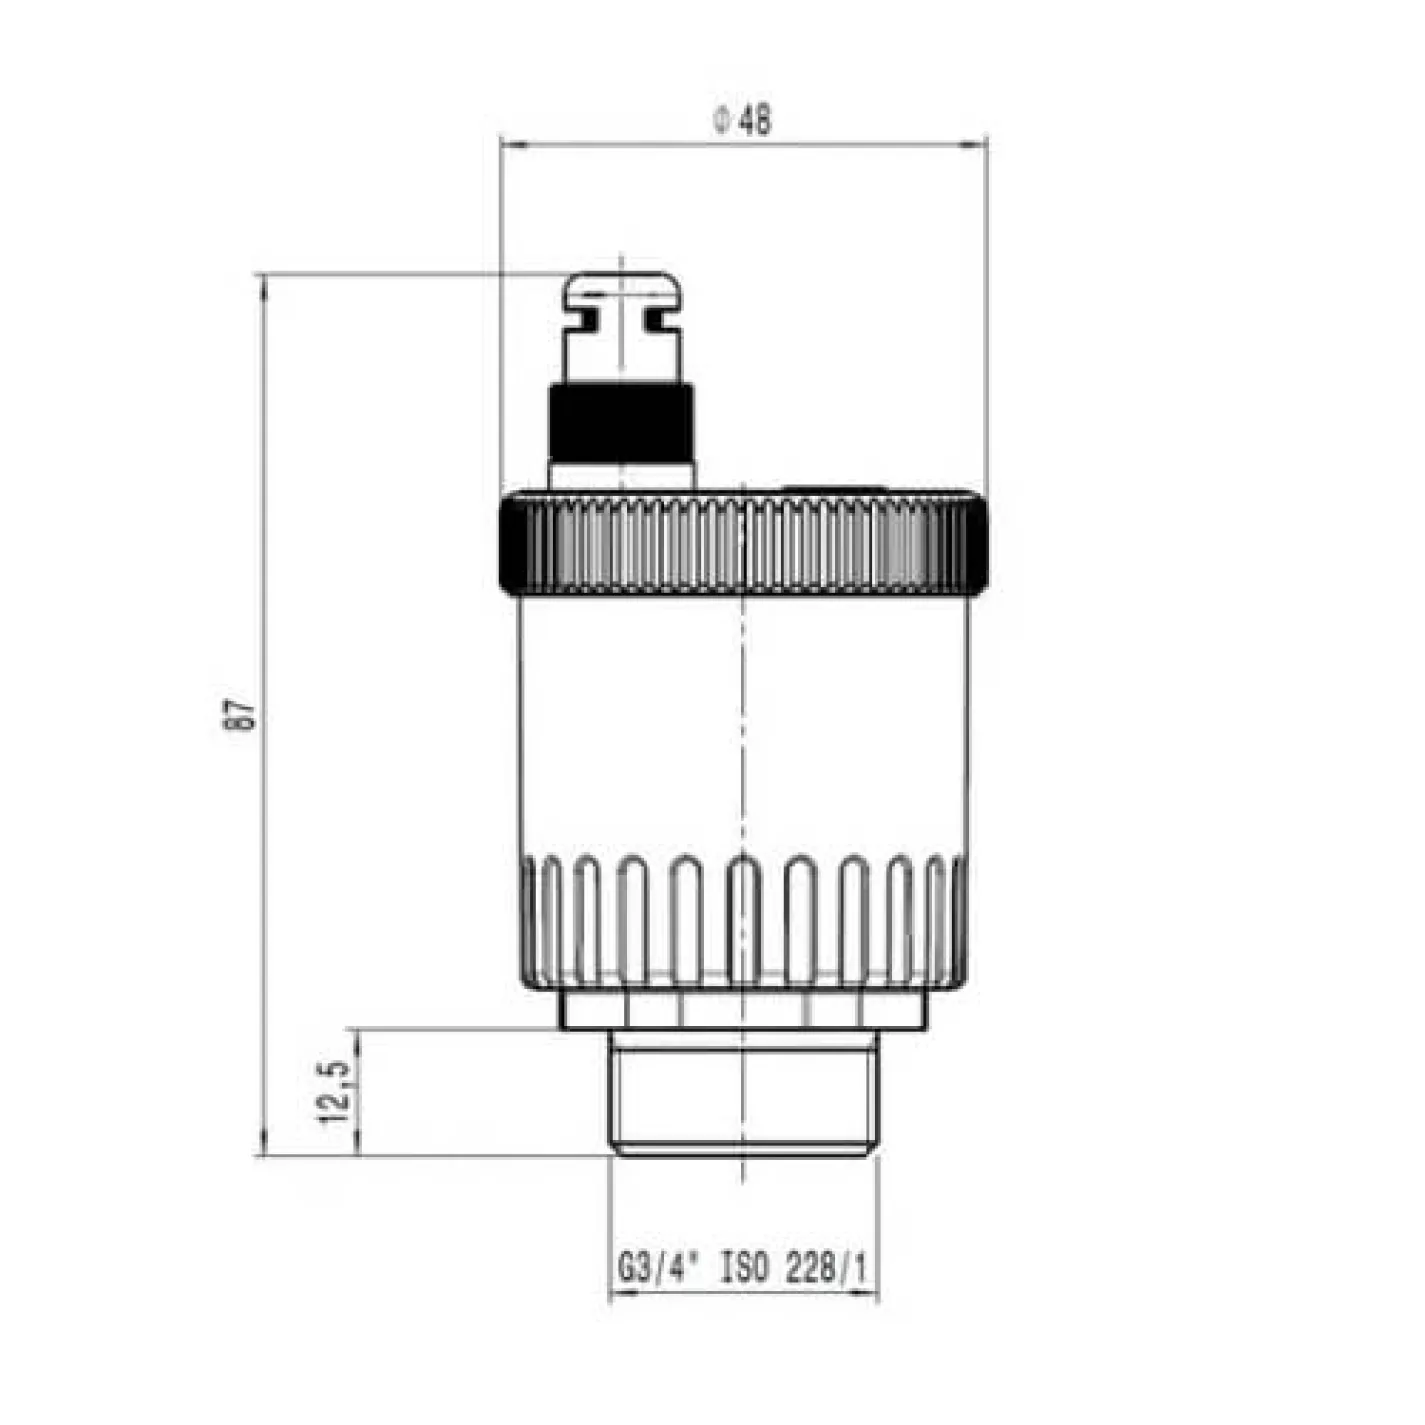 Автоматический воздухоотводчик Caleffi MINICAL вертикальный 3/4 Н 120°C 10 bar (502050) - Фото 1